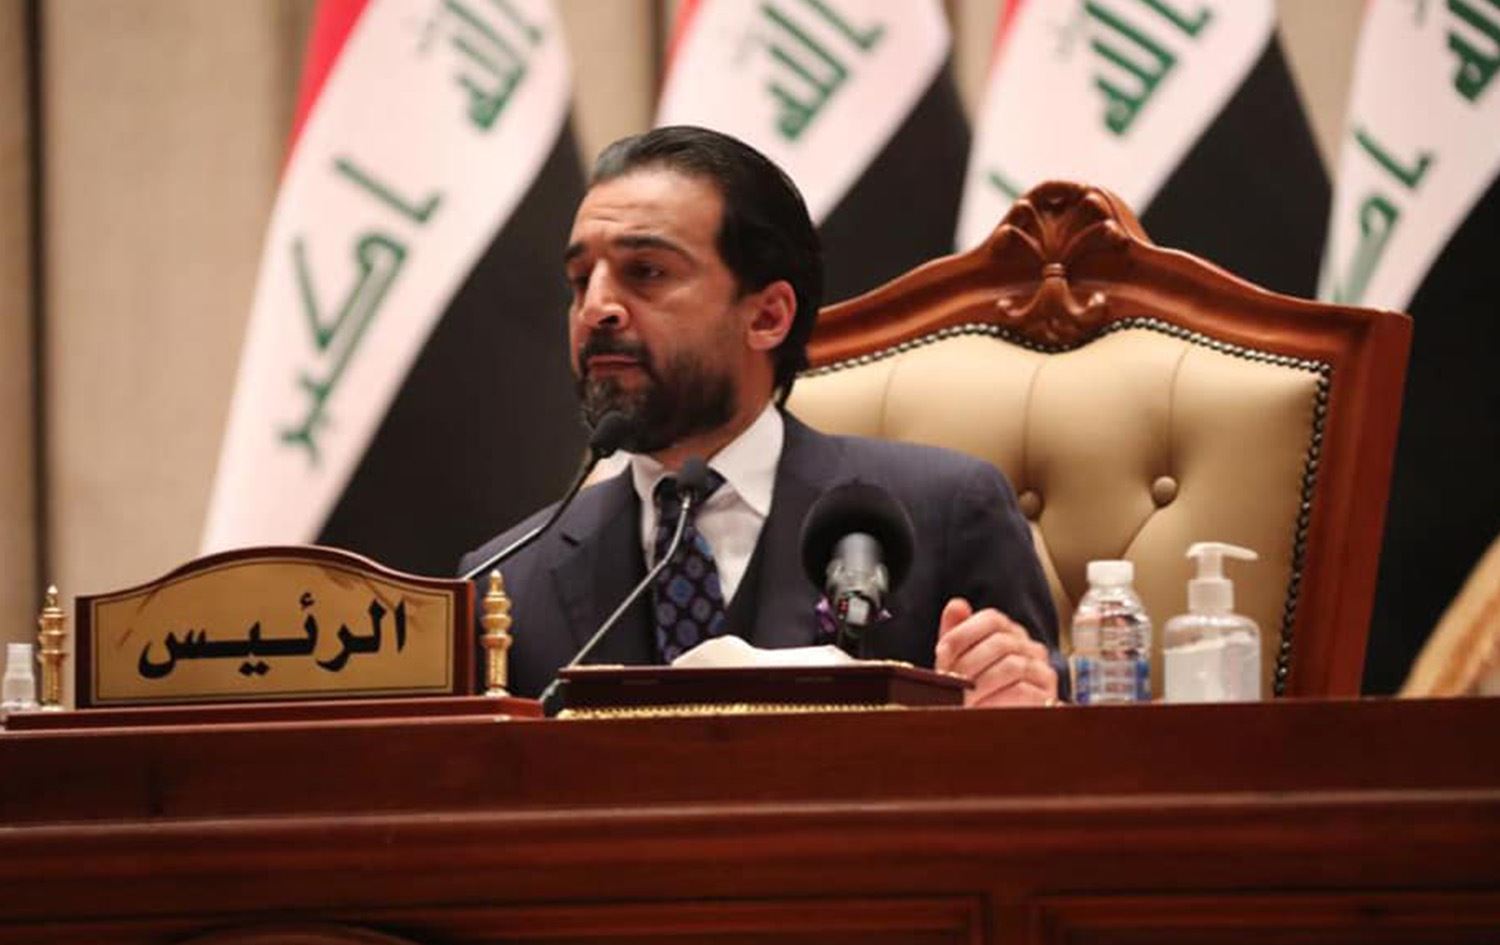 البرلمان العراقي يعقد جلسته للبت في استقالة رئيسه